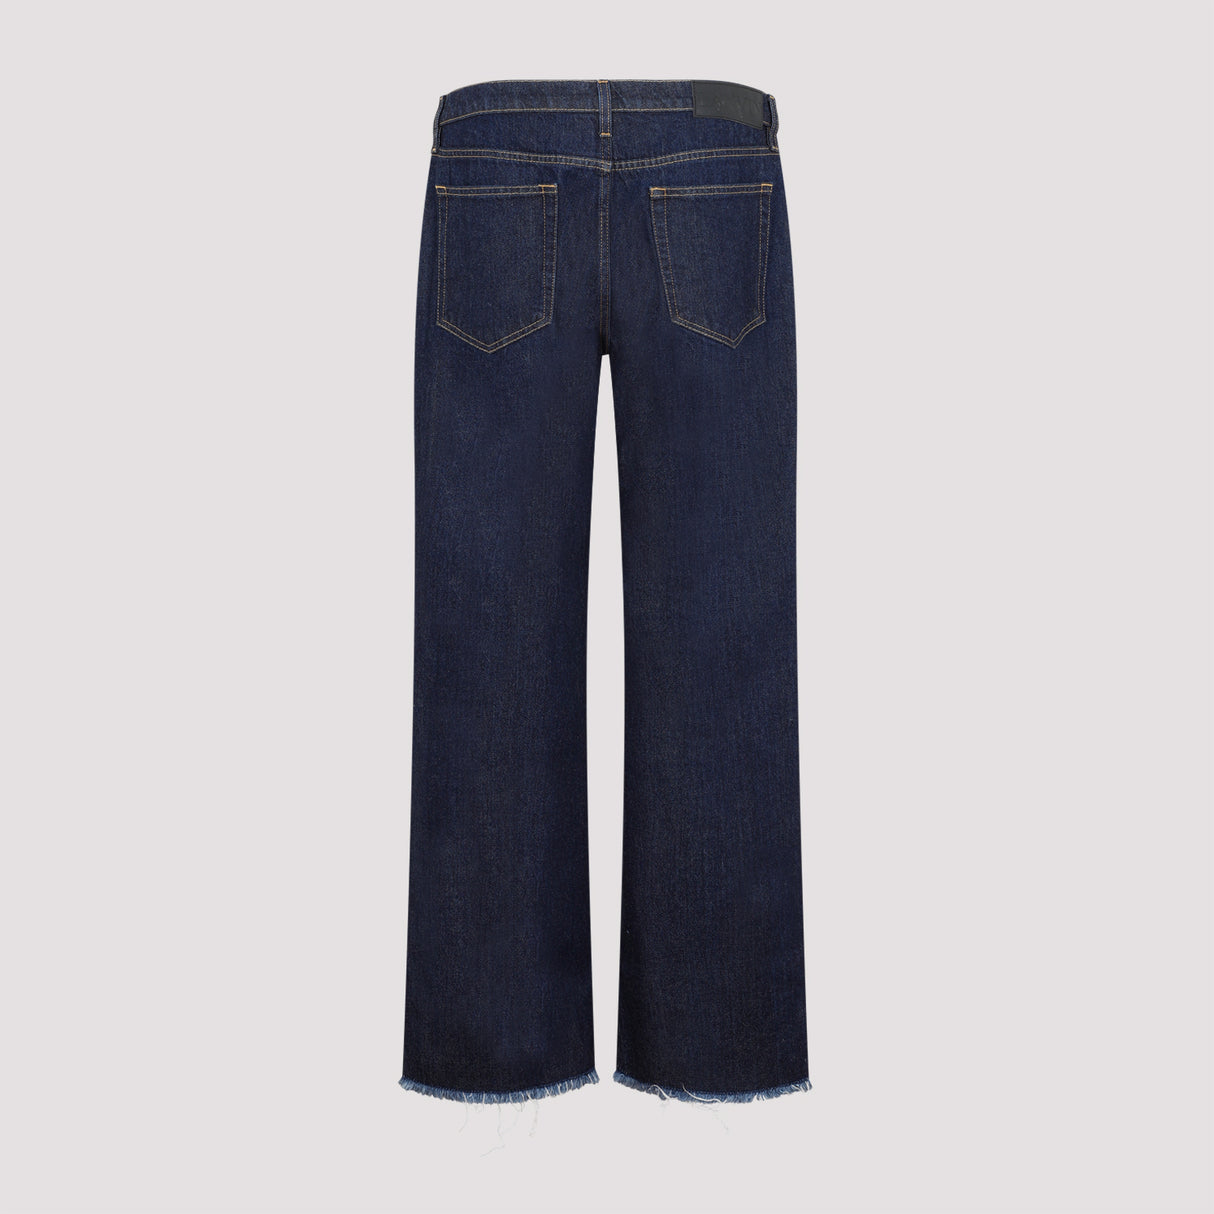 Quần Jeans denim vải cotton với cạp xỏ dây cho phái mạnh - FW23